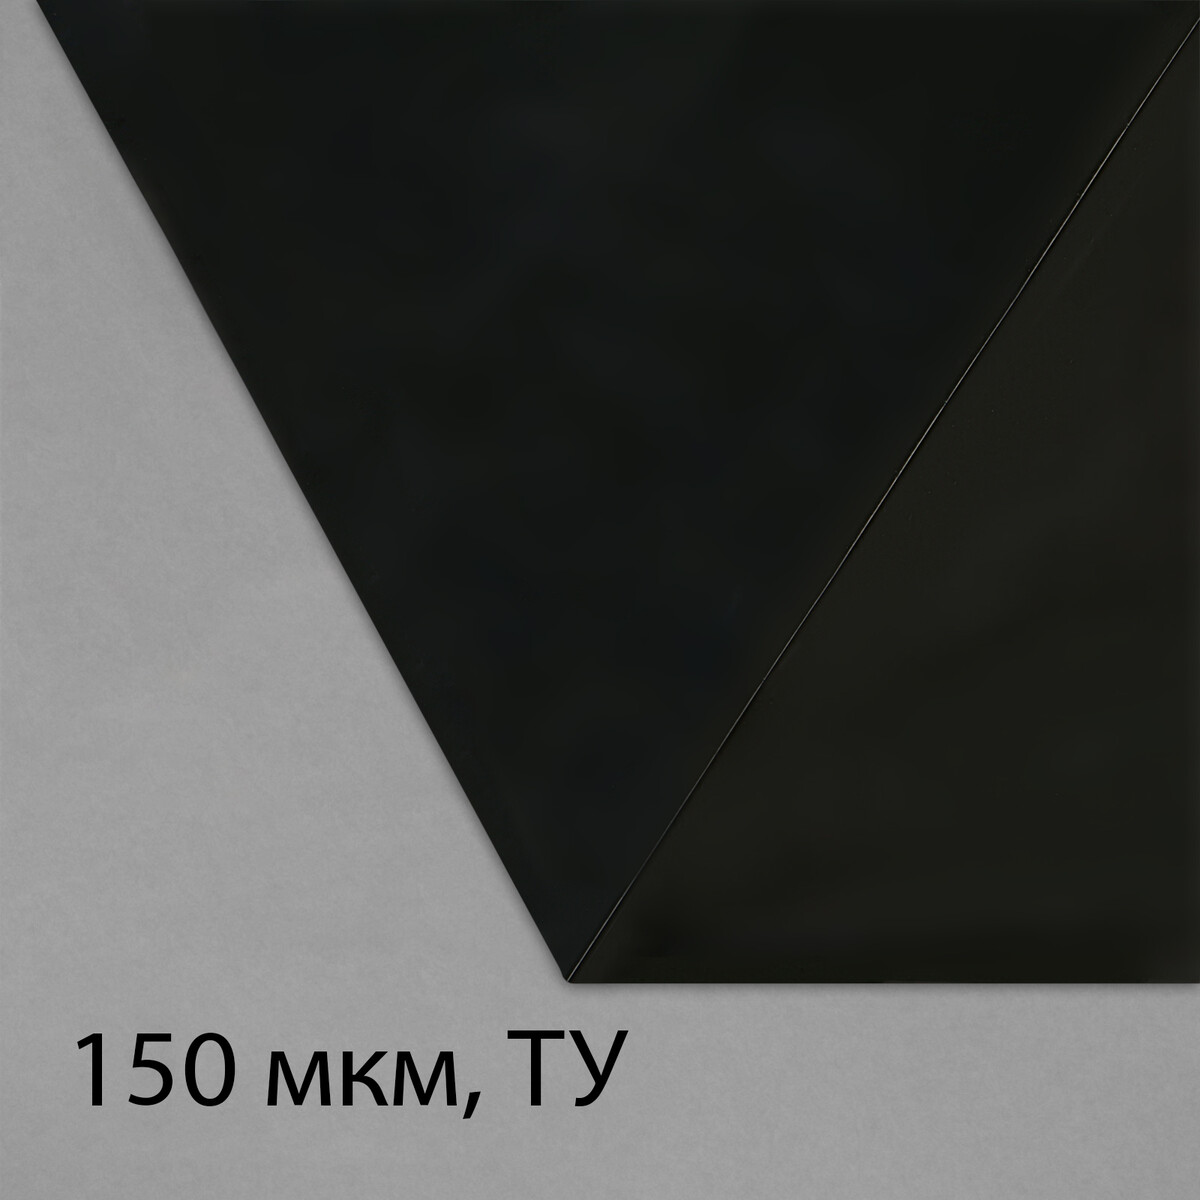 Пленка из полиэтилена, техническая, толщина 150 мкм, черная, 5 × 3 м, рукав (1.5 м × 2), эконом 50%, для дома и сада пленка полиэтиленовая техническая 80 мкм черная длина 10 м ширина 3 м рукав 1 5 × 2 м эконом 50%